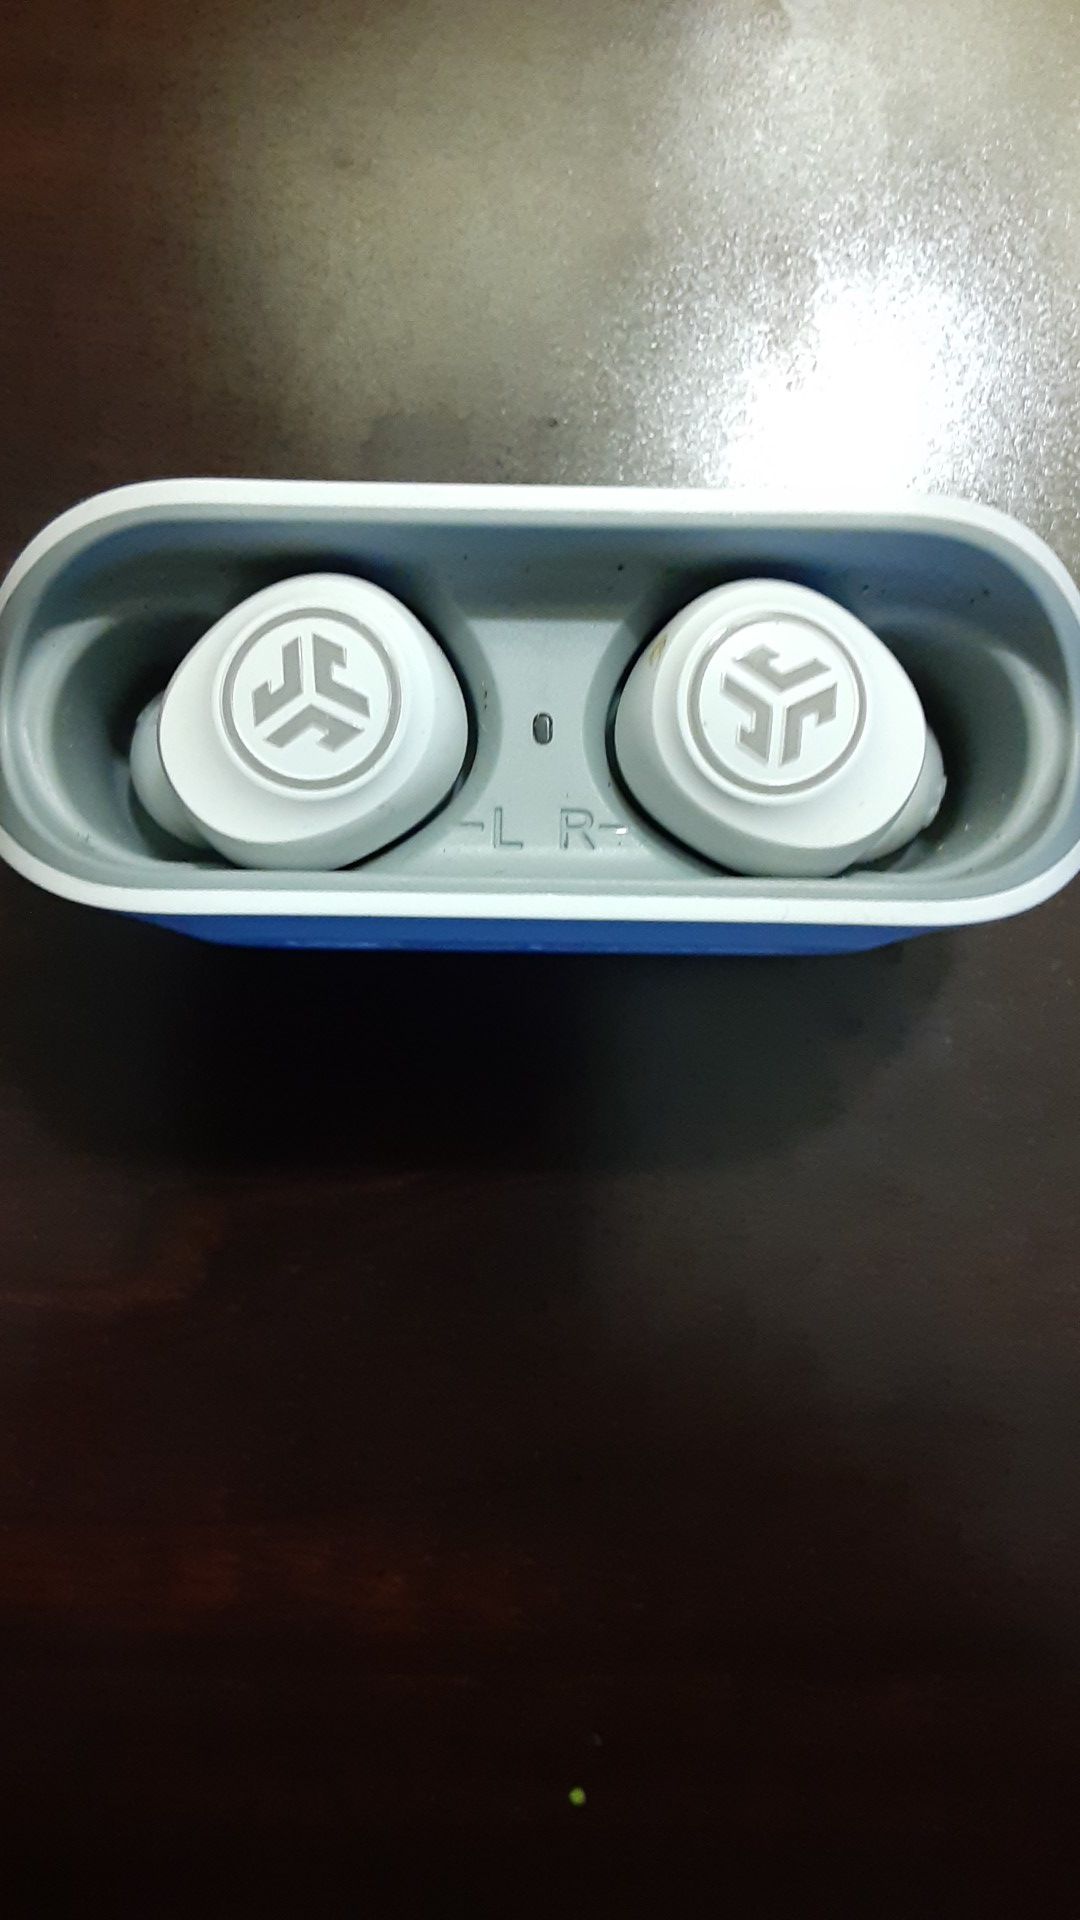 JLab Audio - JBuds Air True Wireless Earbud Headphones - White